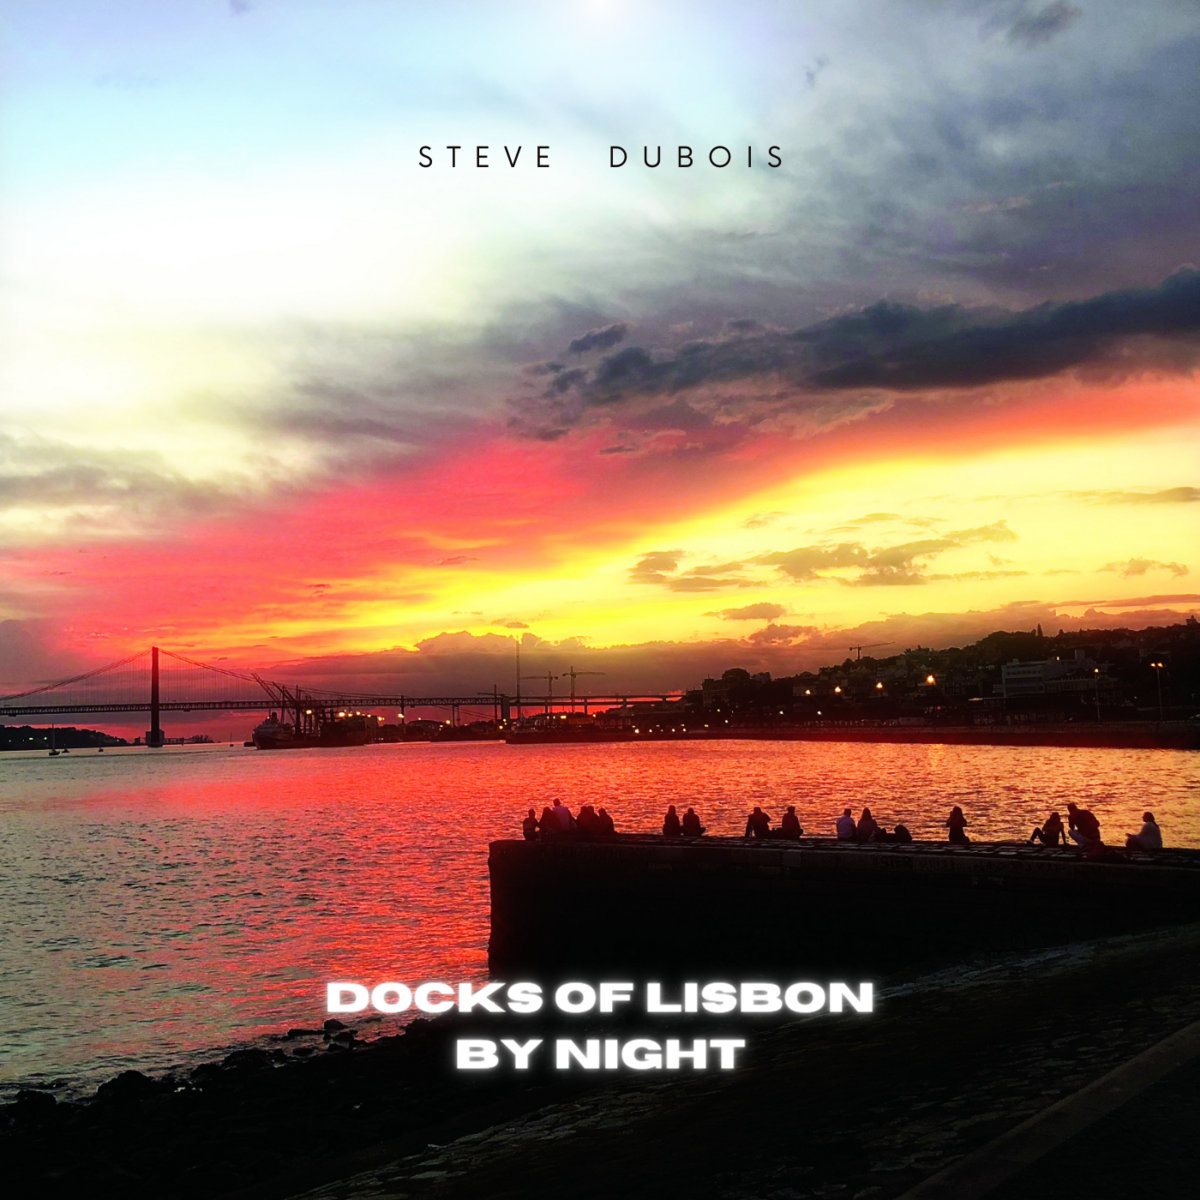 Docks of Lisbon by Night - Steve Dubois